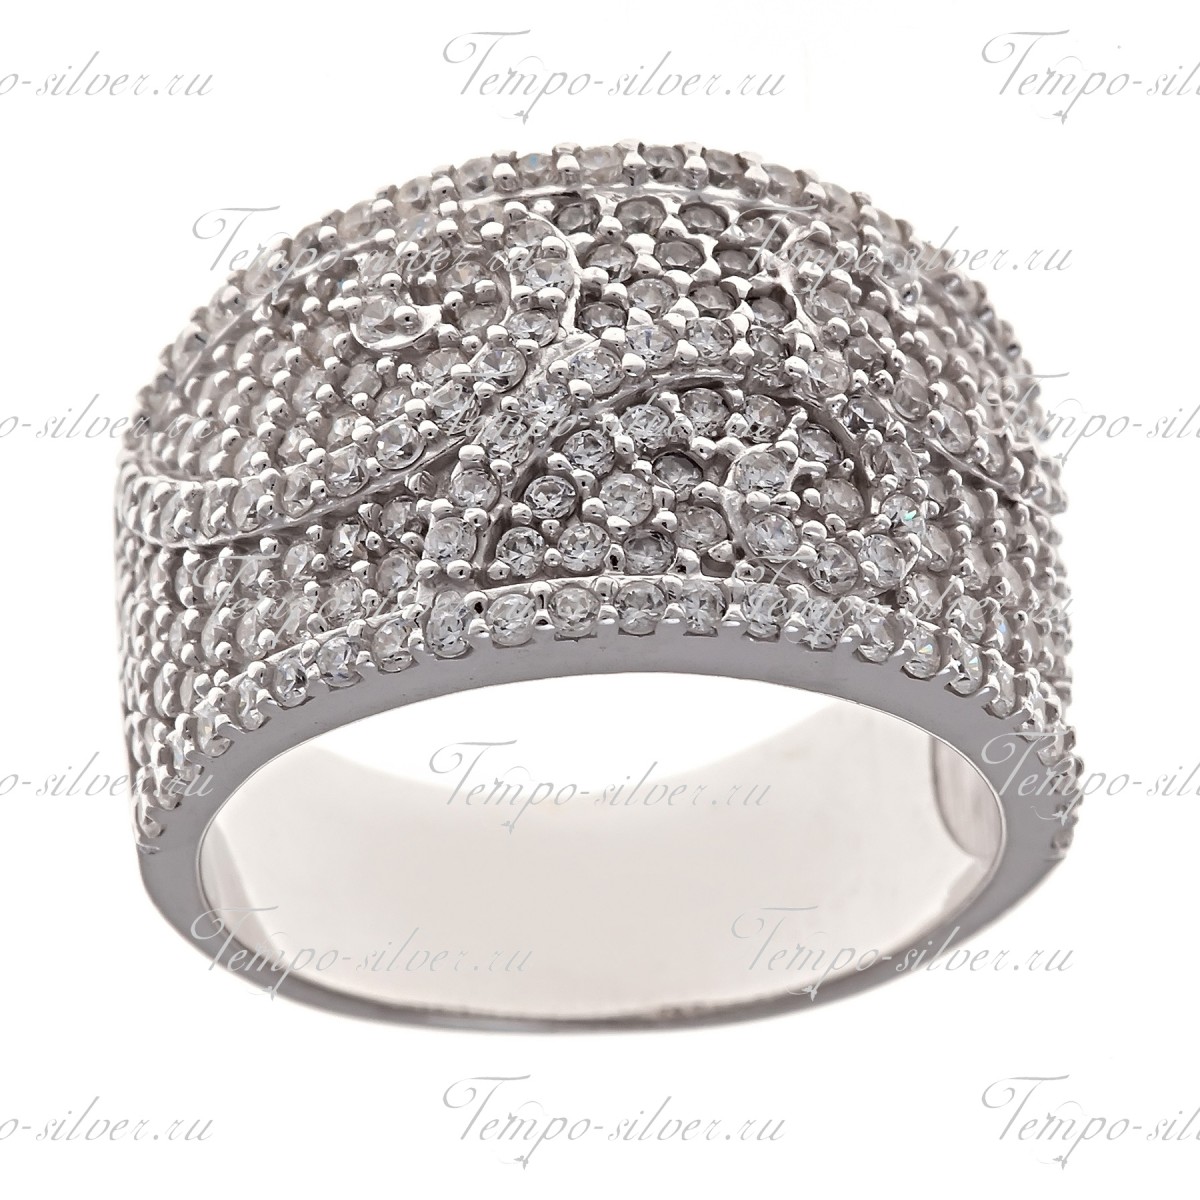 Кольцо из серебра широкой формы с узором из белых камней цена